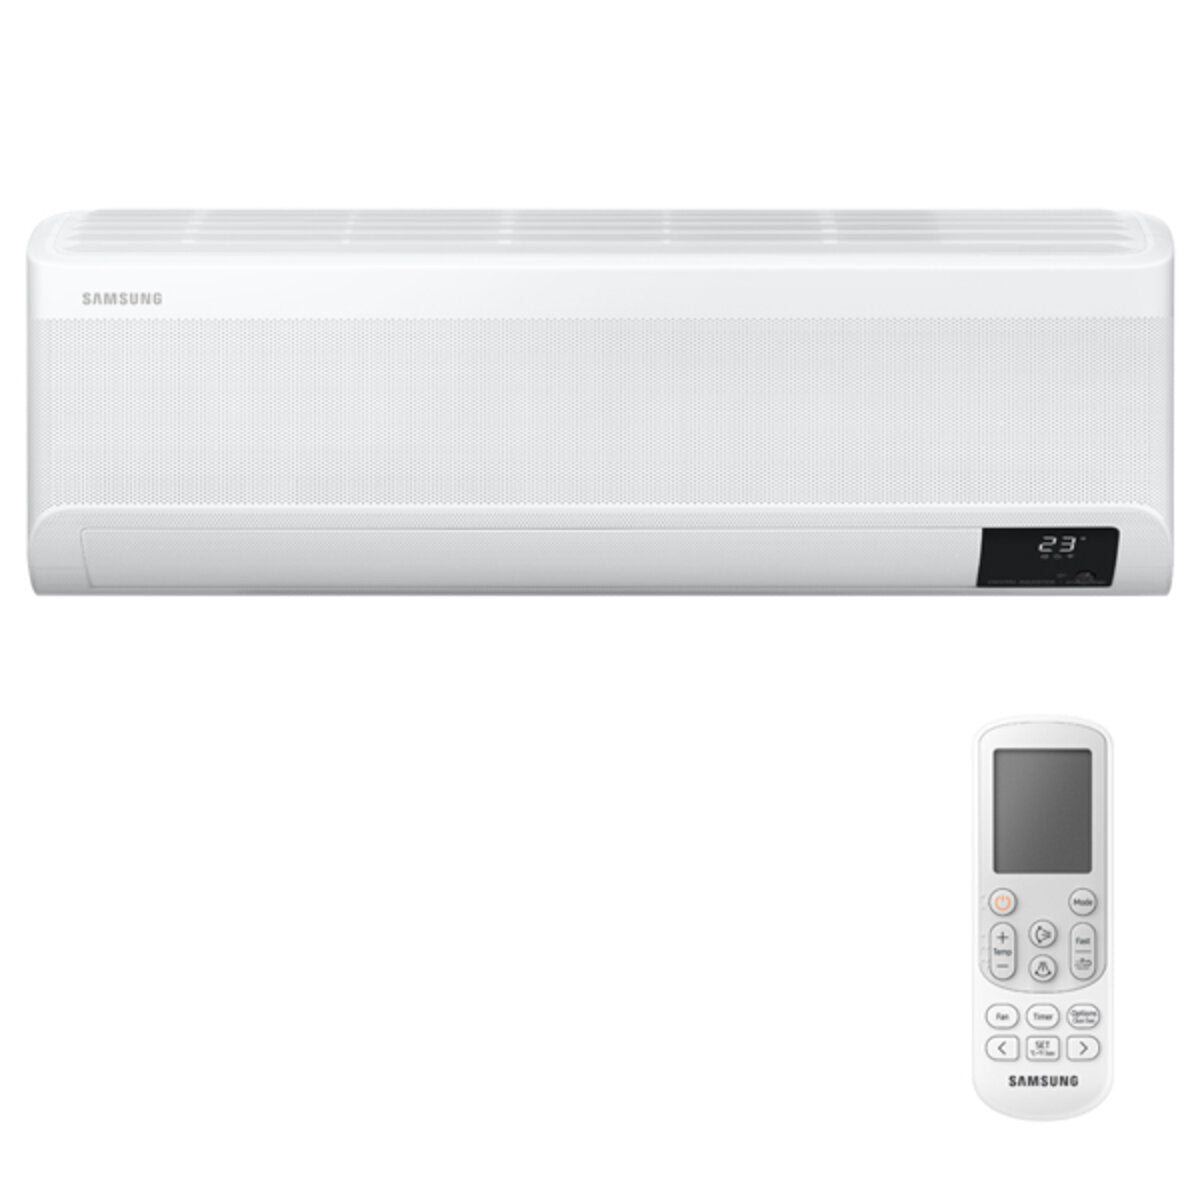 Samsung windfree Klimaanlage Avant Penta Split 7000 + 7000 + 7000 + 9000 + 9000 BTU Inverter A++ WLAN Außengerät 10,0 kW